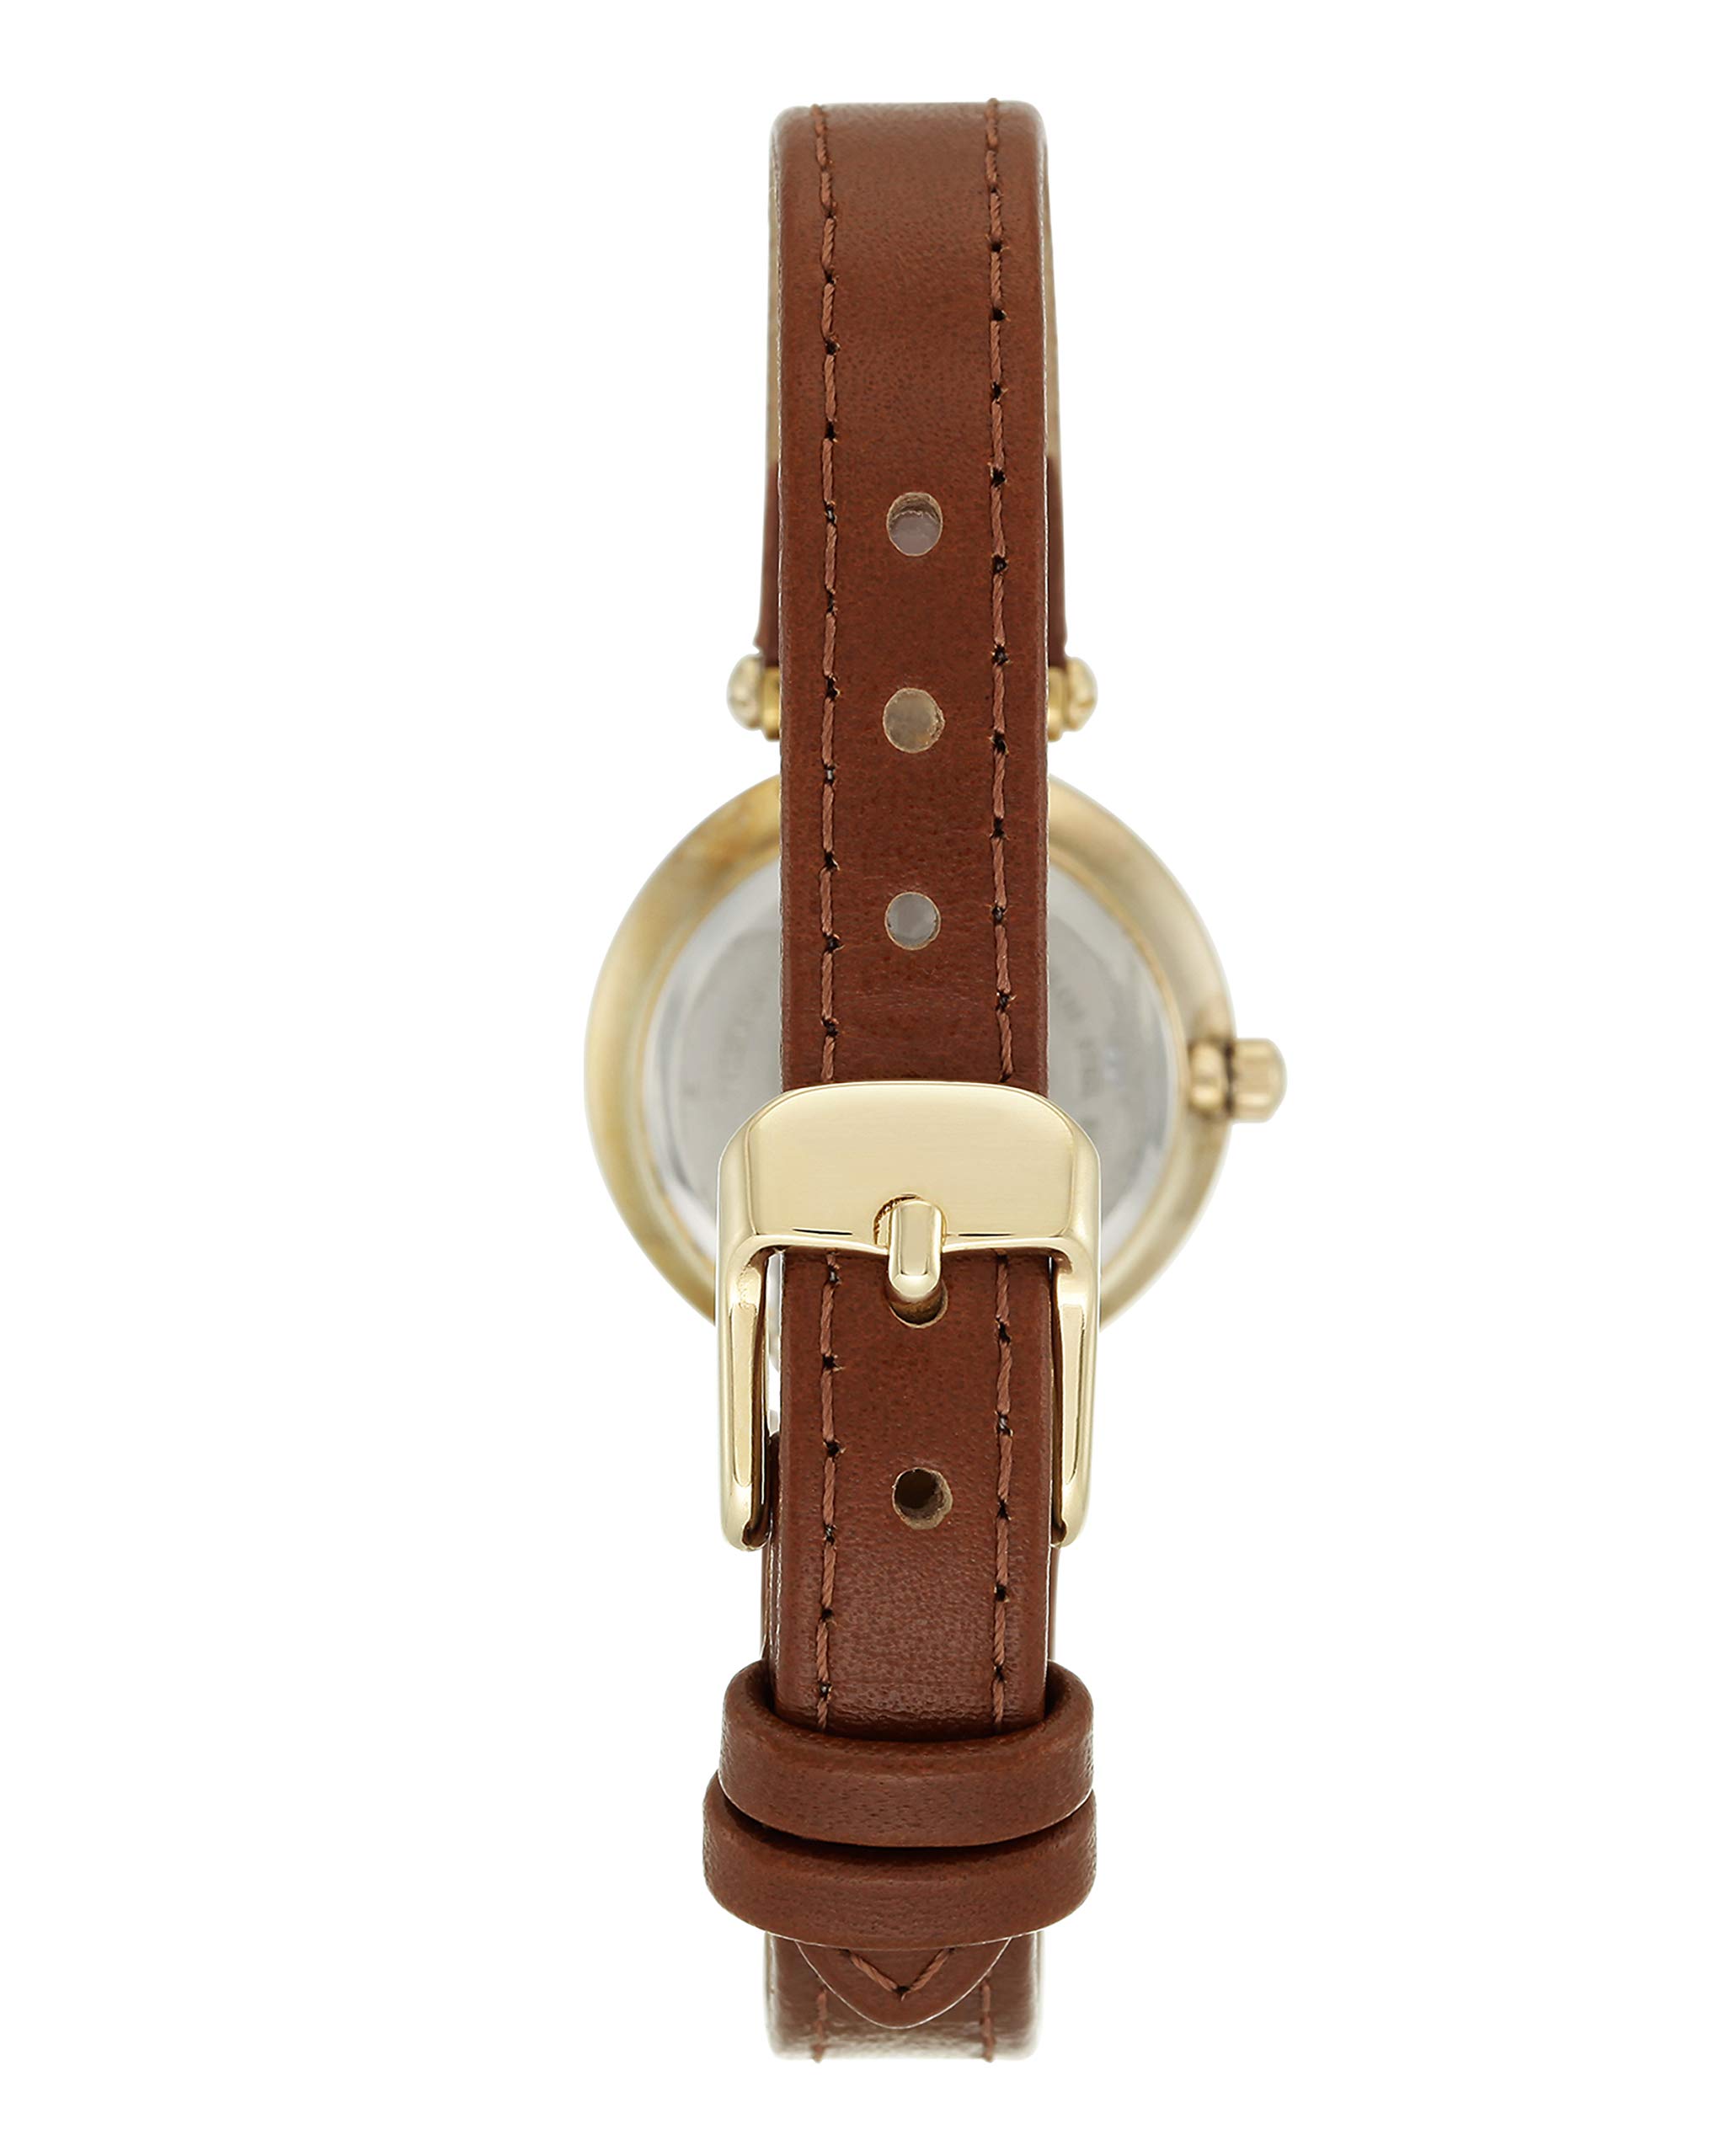 Anne Klein Women's Leather Strap Watch